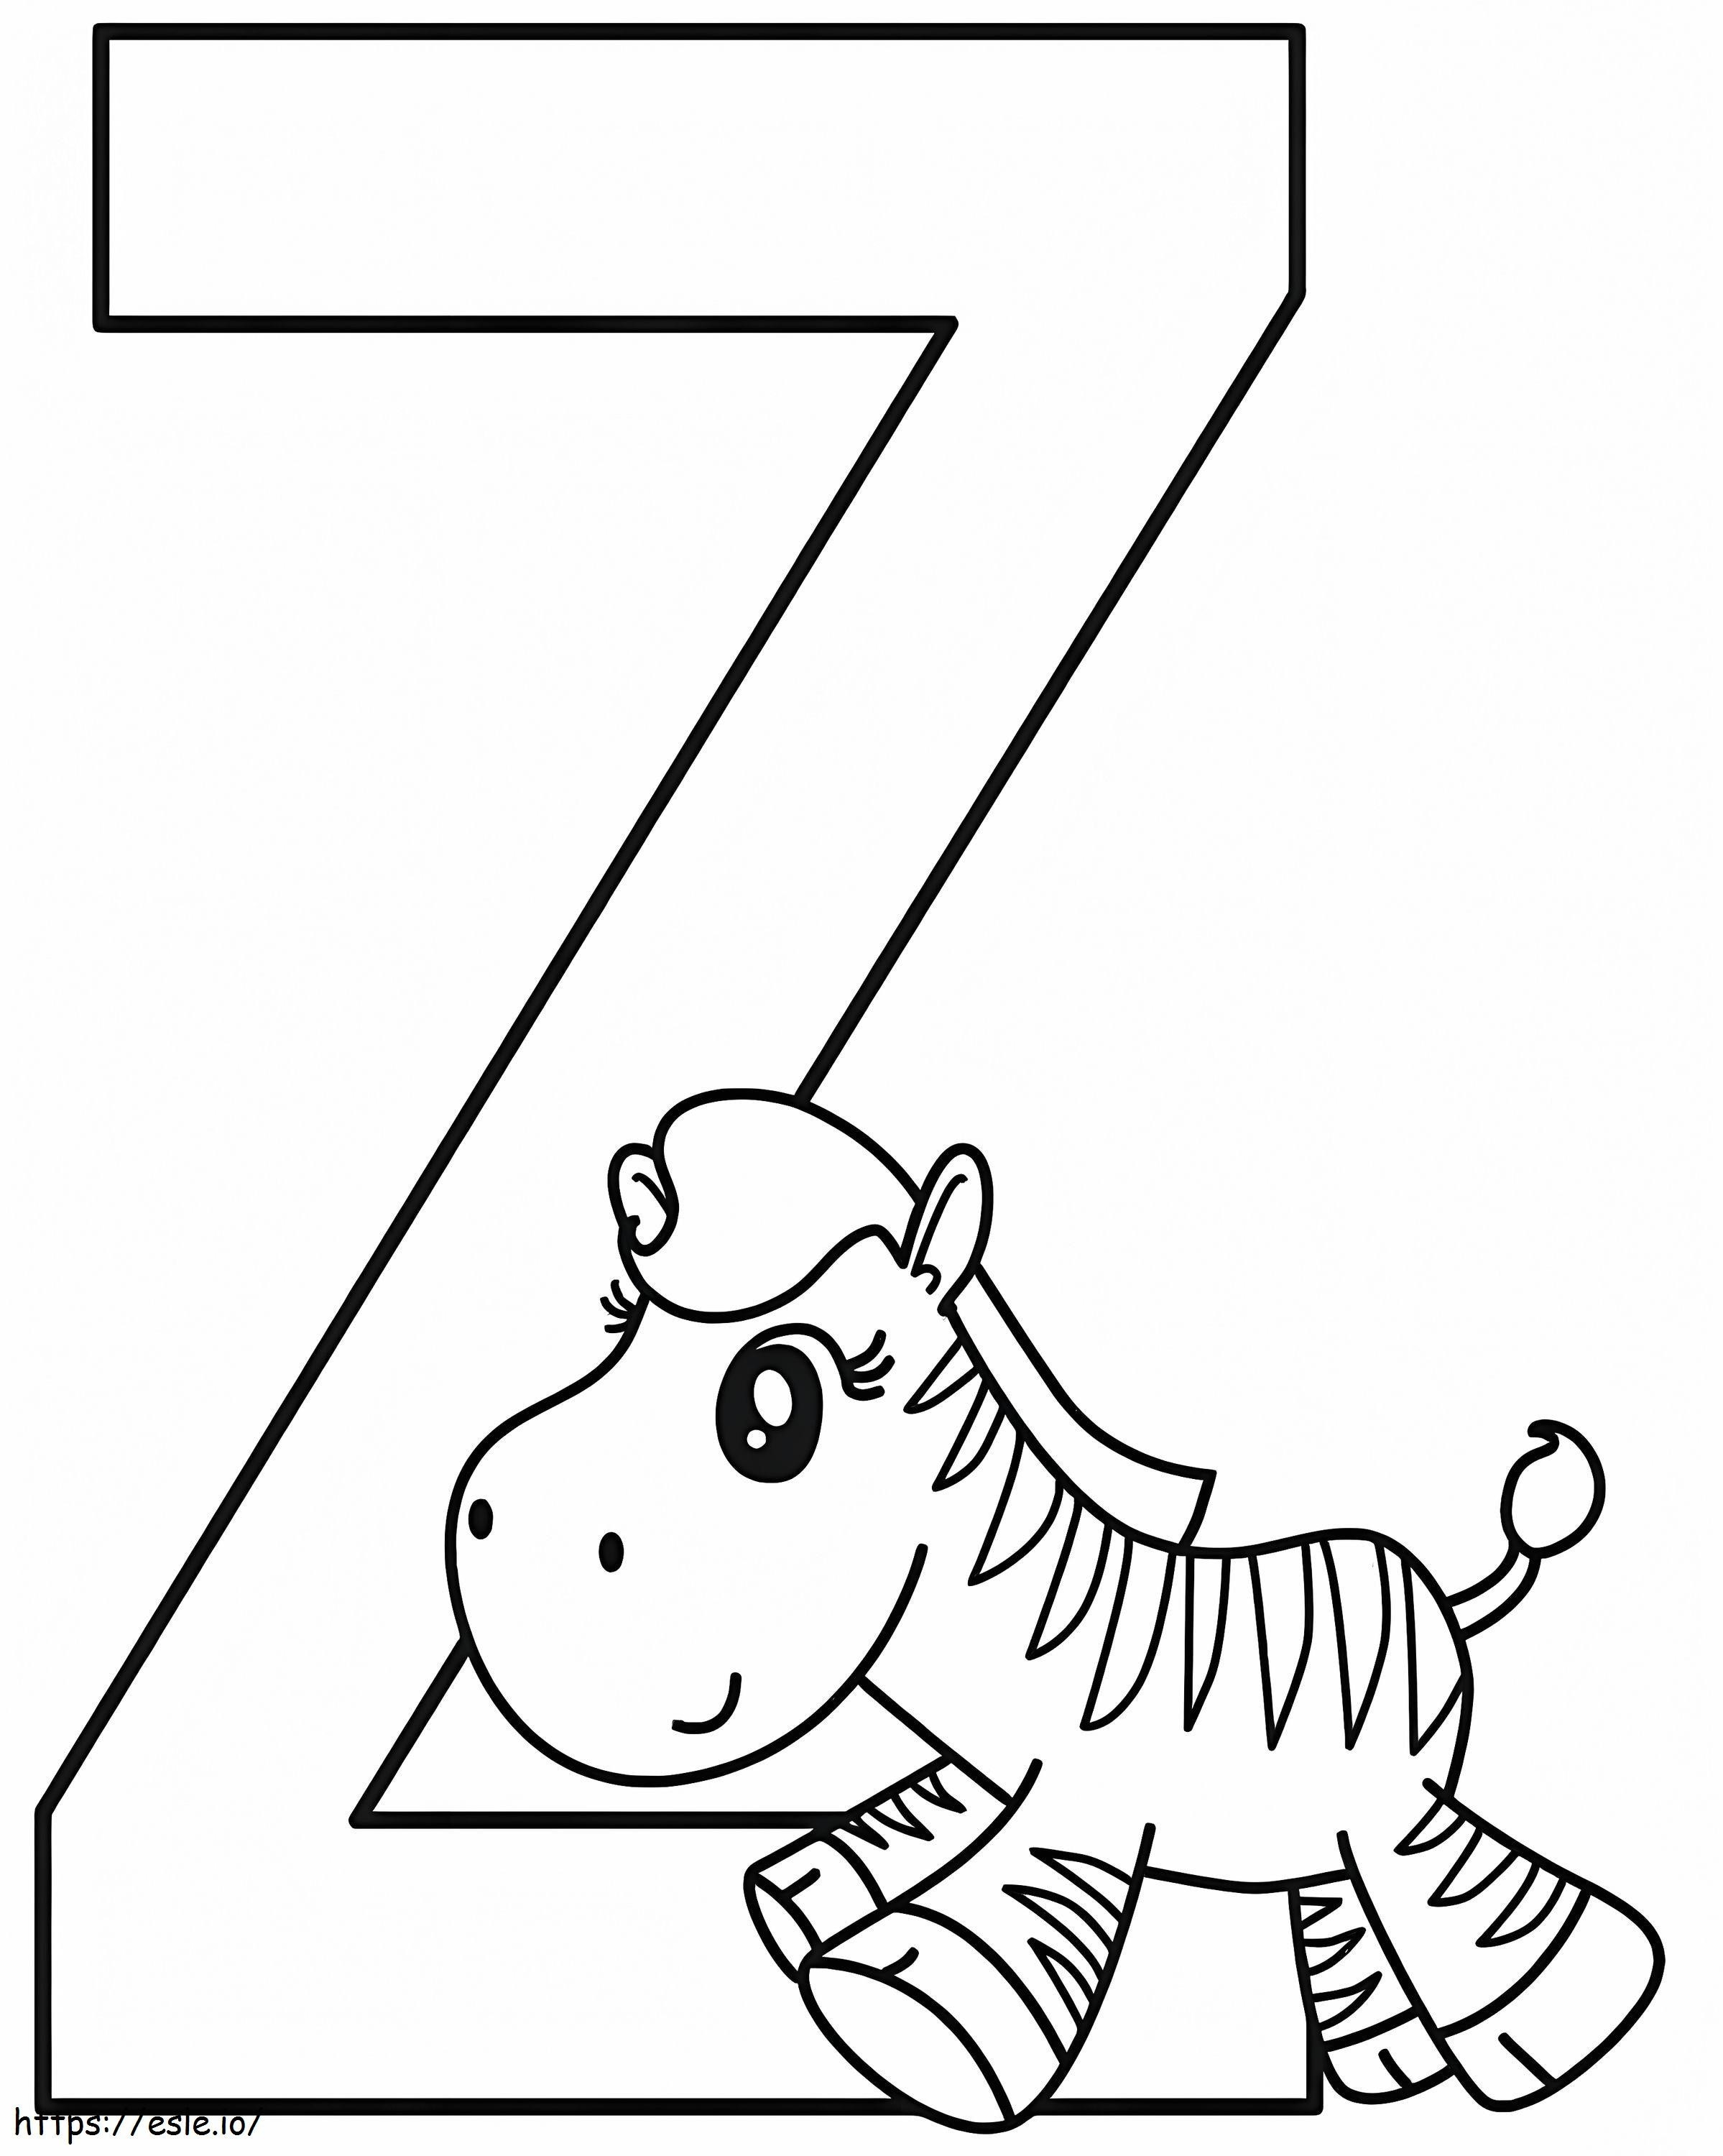 Baby Zebra Lettera Z da colorare